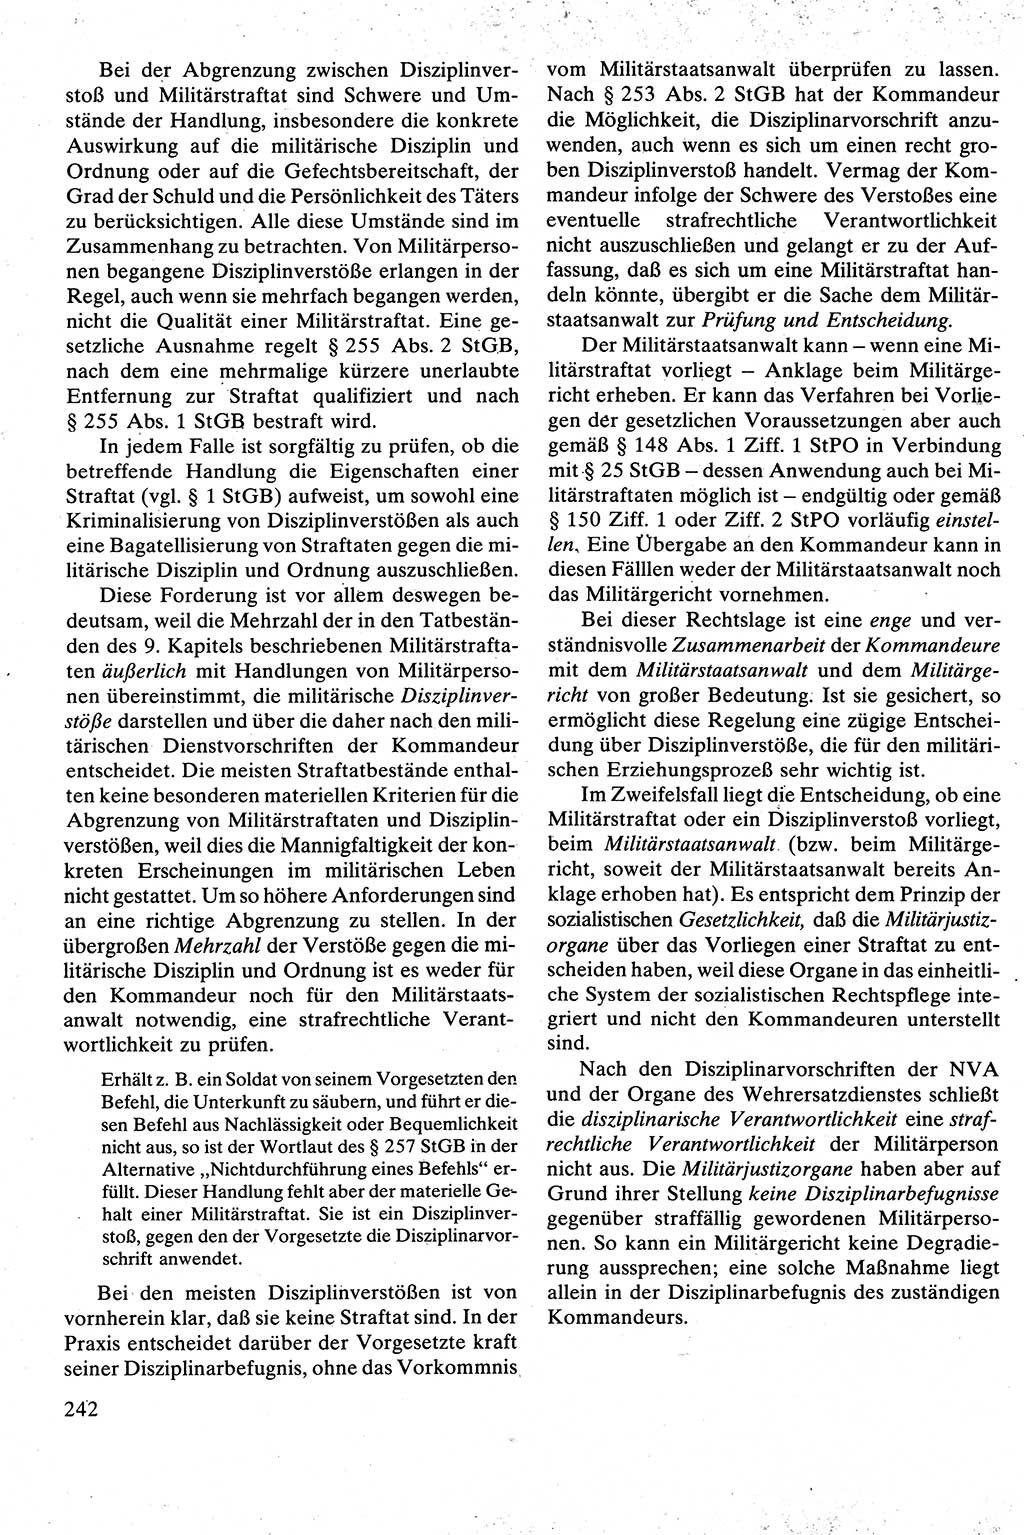 Strafrecht [Deutsche Demokratische Republik (DDR)], Besonderer Teil, Lehrbuch 1981, Seite 242 (Strafr. DDR BT Lb. 1981, S. 242)